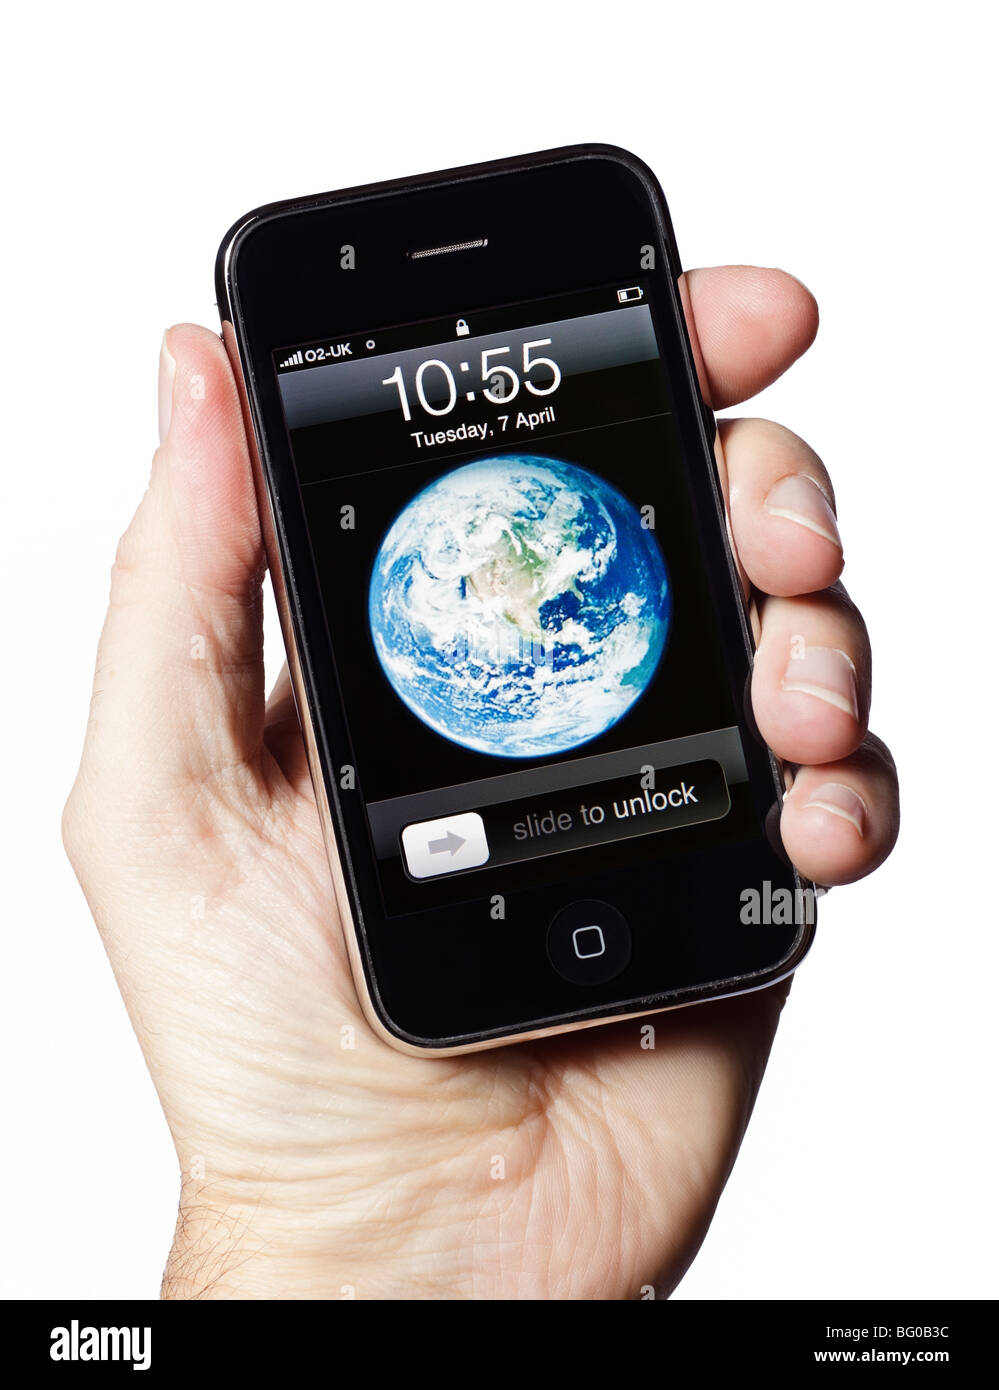 Smartphone iPhone cellulare smart phone che mostra la schermata di avvio Foto Stock